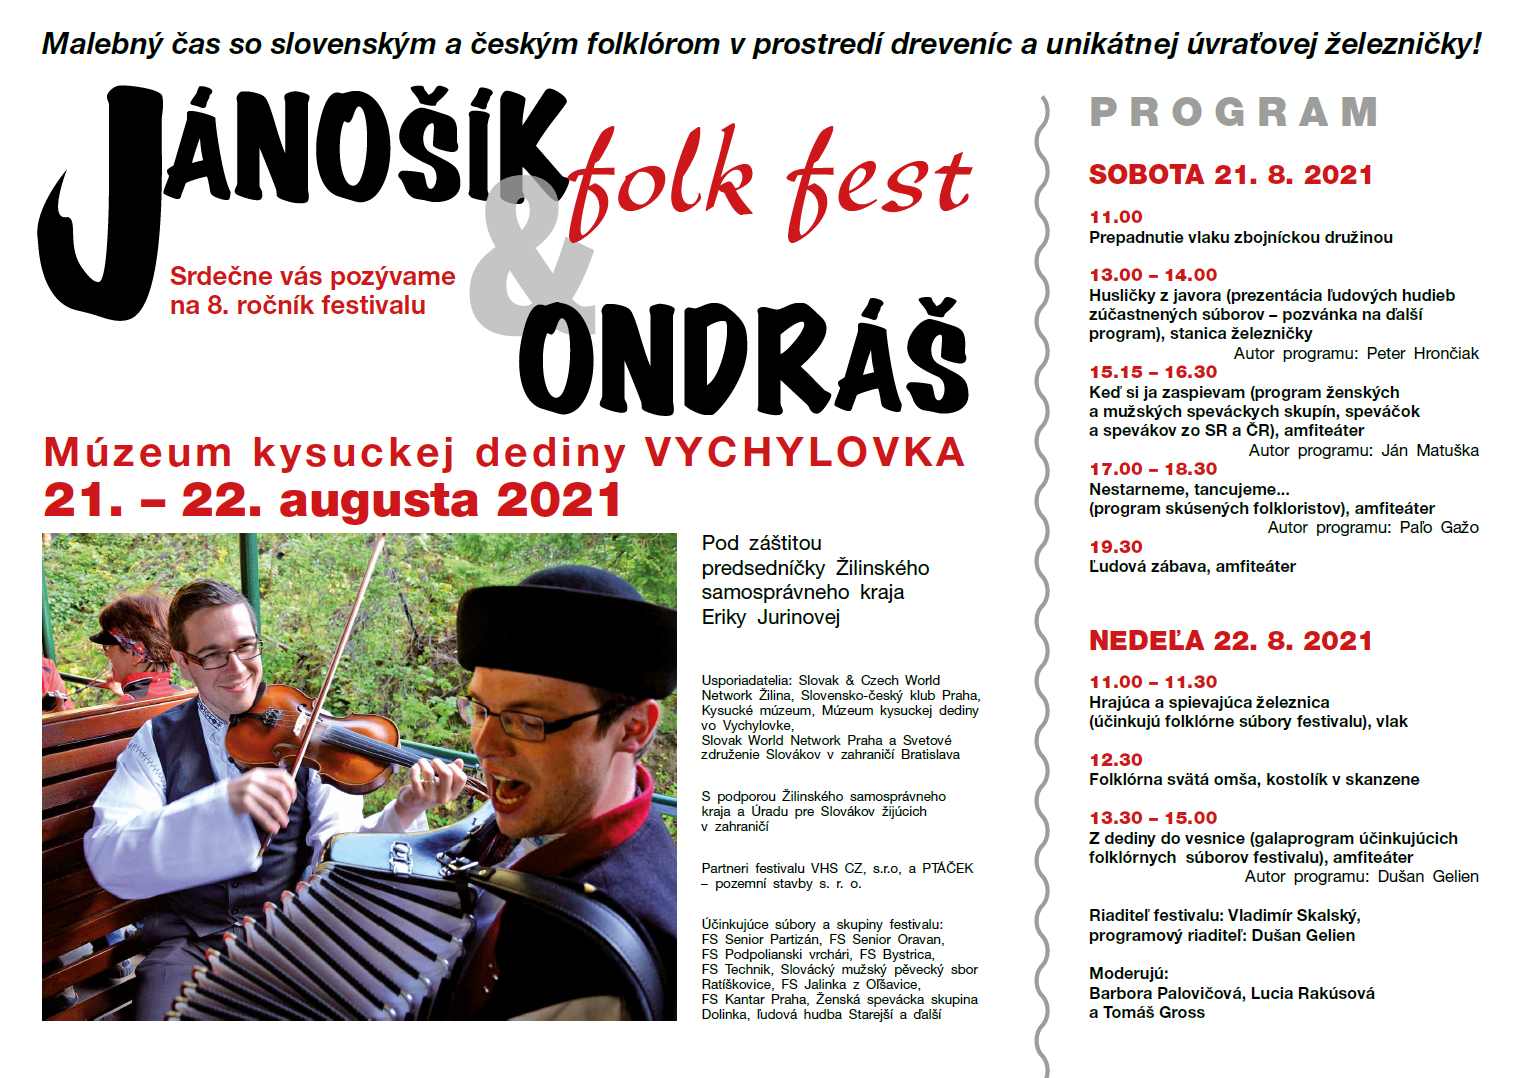 NOV - - - Jnok & Ondr Folk Fest 2021 Vychylovka  - 8. ronk